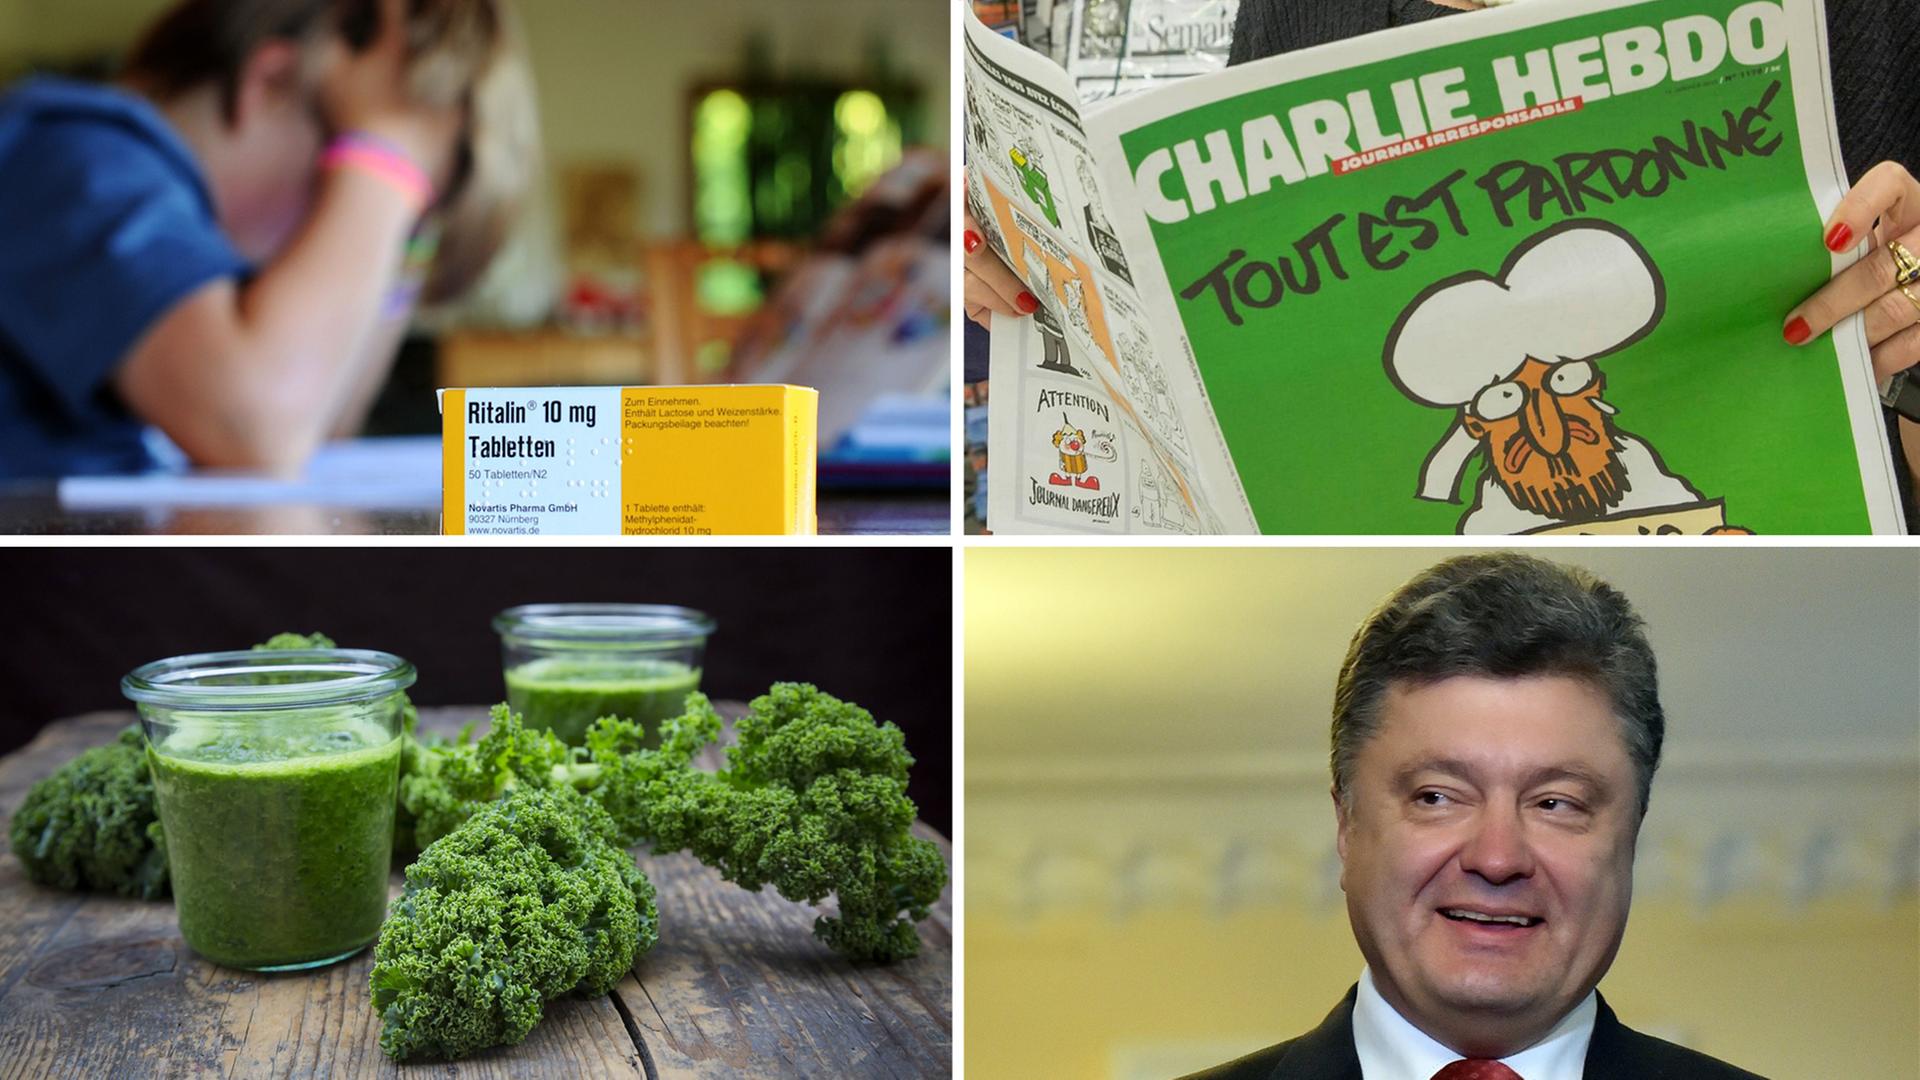 EineCollage: Packung, Ritalin, eine Ausgabe des Satiremagazin "Charlie Hebdo", zwei Gläser mit grünem Smoothie aus Grünkohl, der ukrainische Präsident Poroschenko 